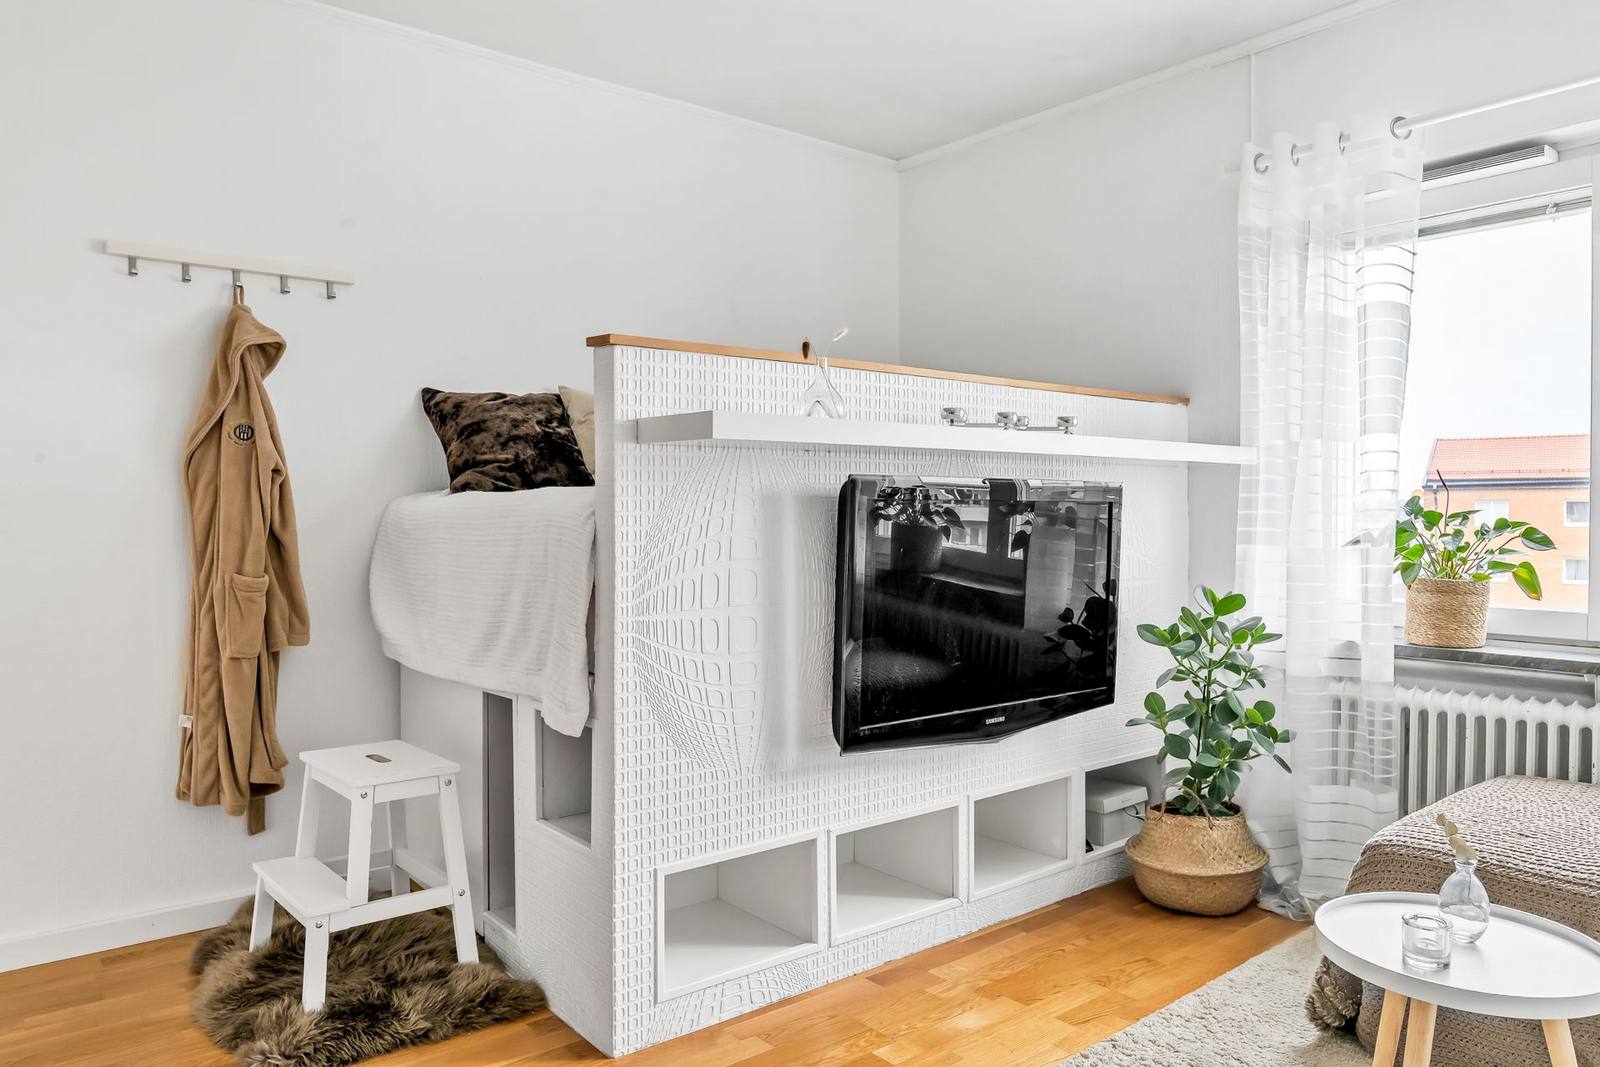 Chính chiếc giường ngủ độc đáo nào đã tối ưu hóa không gian căn hộ với diện tích sàn nhỏ, trần nhà thấp nhưng vẫn tạo sự riêng tư nhất định cho không gian nghỉ ngơi. Bên dưới là khu vực lưu trữ thoải mái, thêm cả móc treo quần áo nhỏ gọn và kệ mở trên tivi.